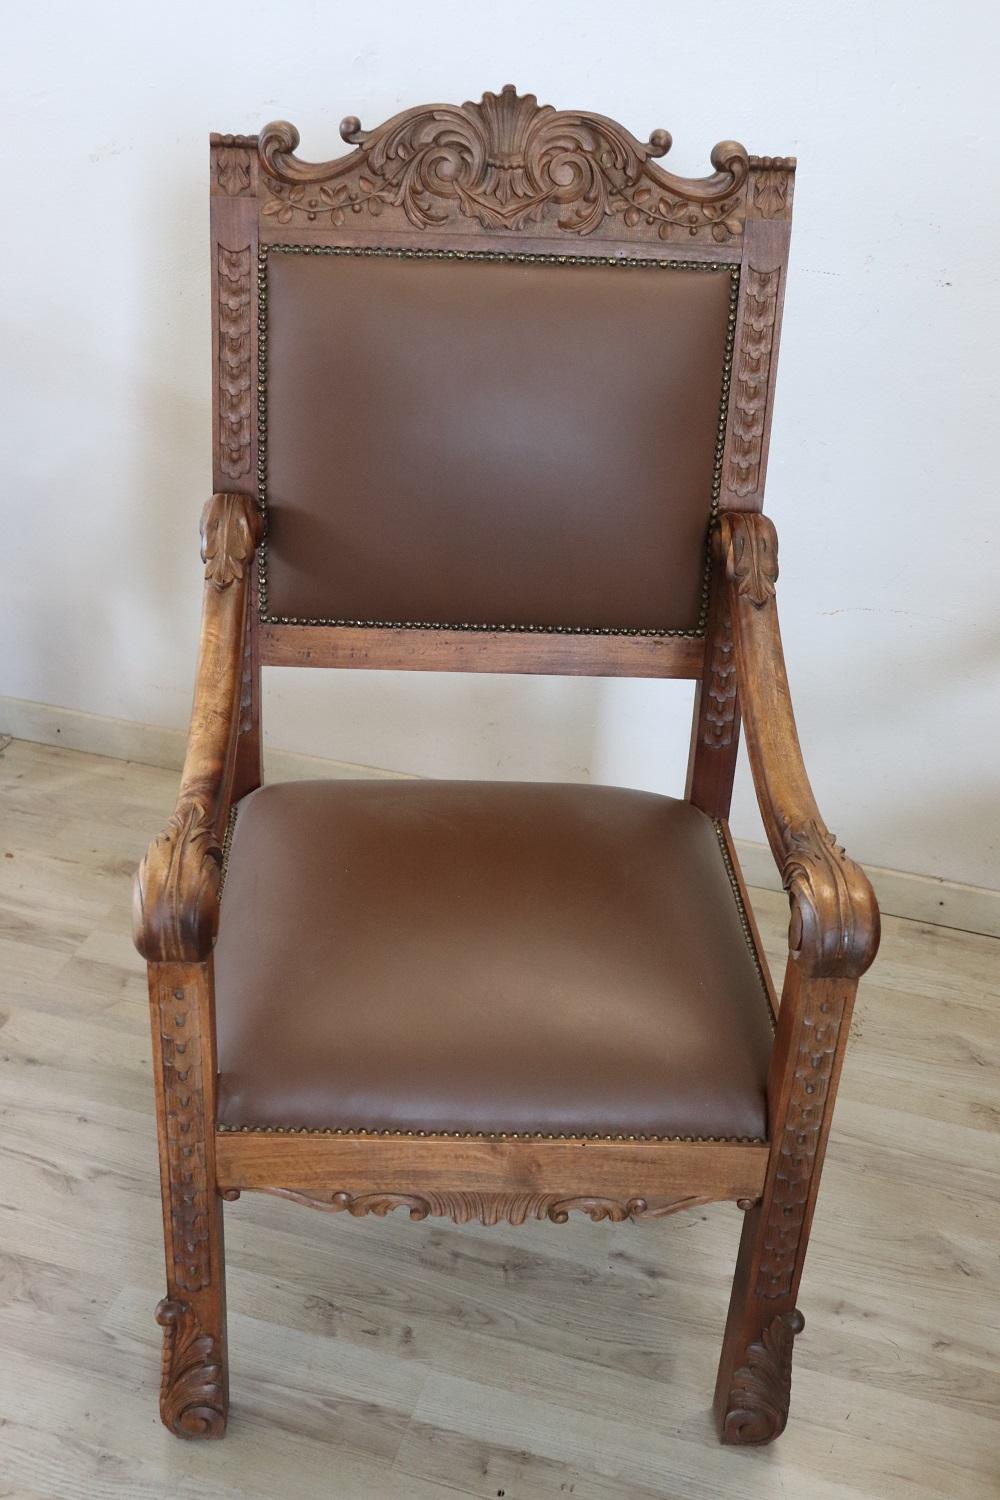 Impressionnante paire rare de chaises à trône dans le parfait style de la Renaissance italienne, fin du 19e siècle. Fabriqué en bois de noyer massif. Le dossier en bois finement sculpté présente une décoration très complexe. Notez que le décor